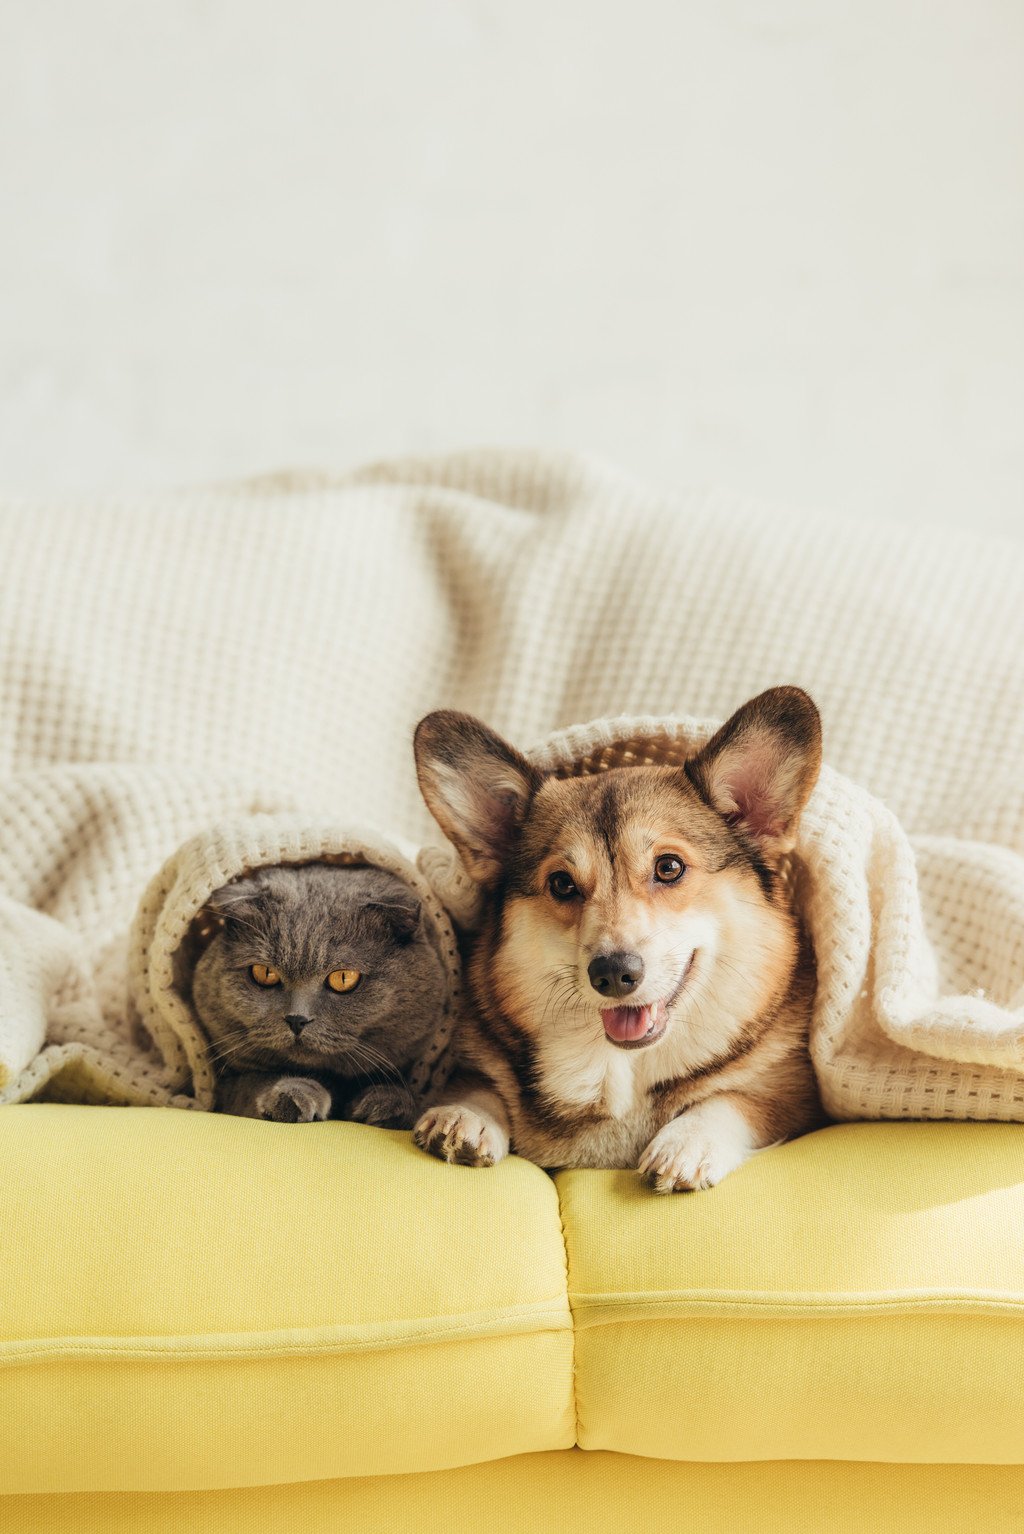 Katze und Hund liegen frontal auf einem gelben Sofa und sind mit einer beigen Decke bis zum Kopf zugedeckt